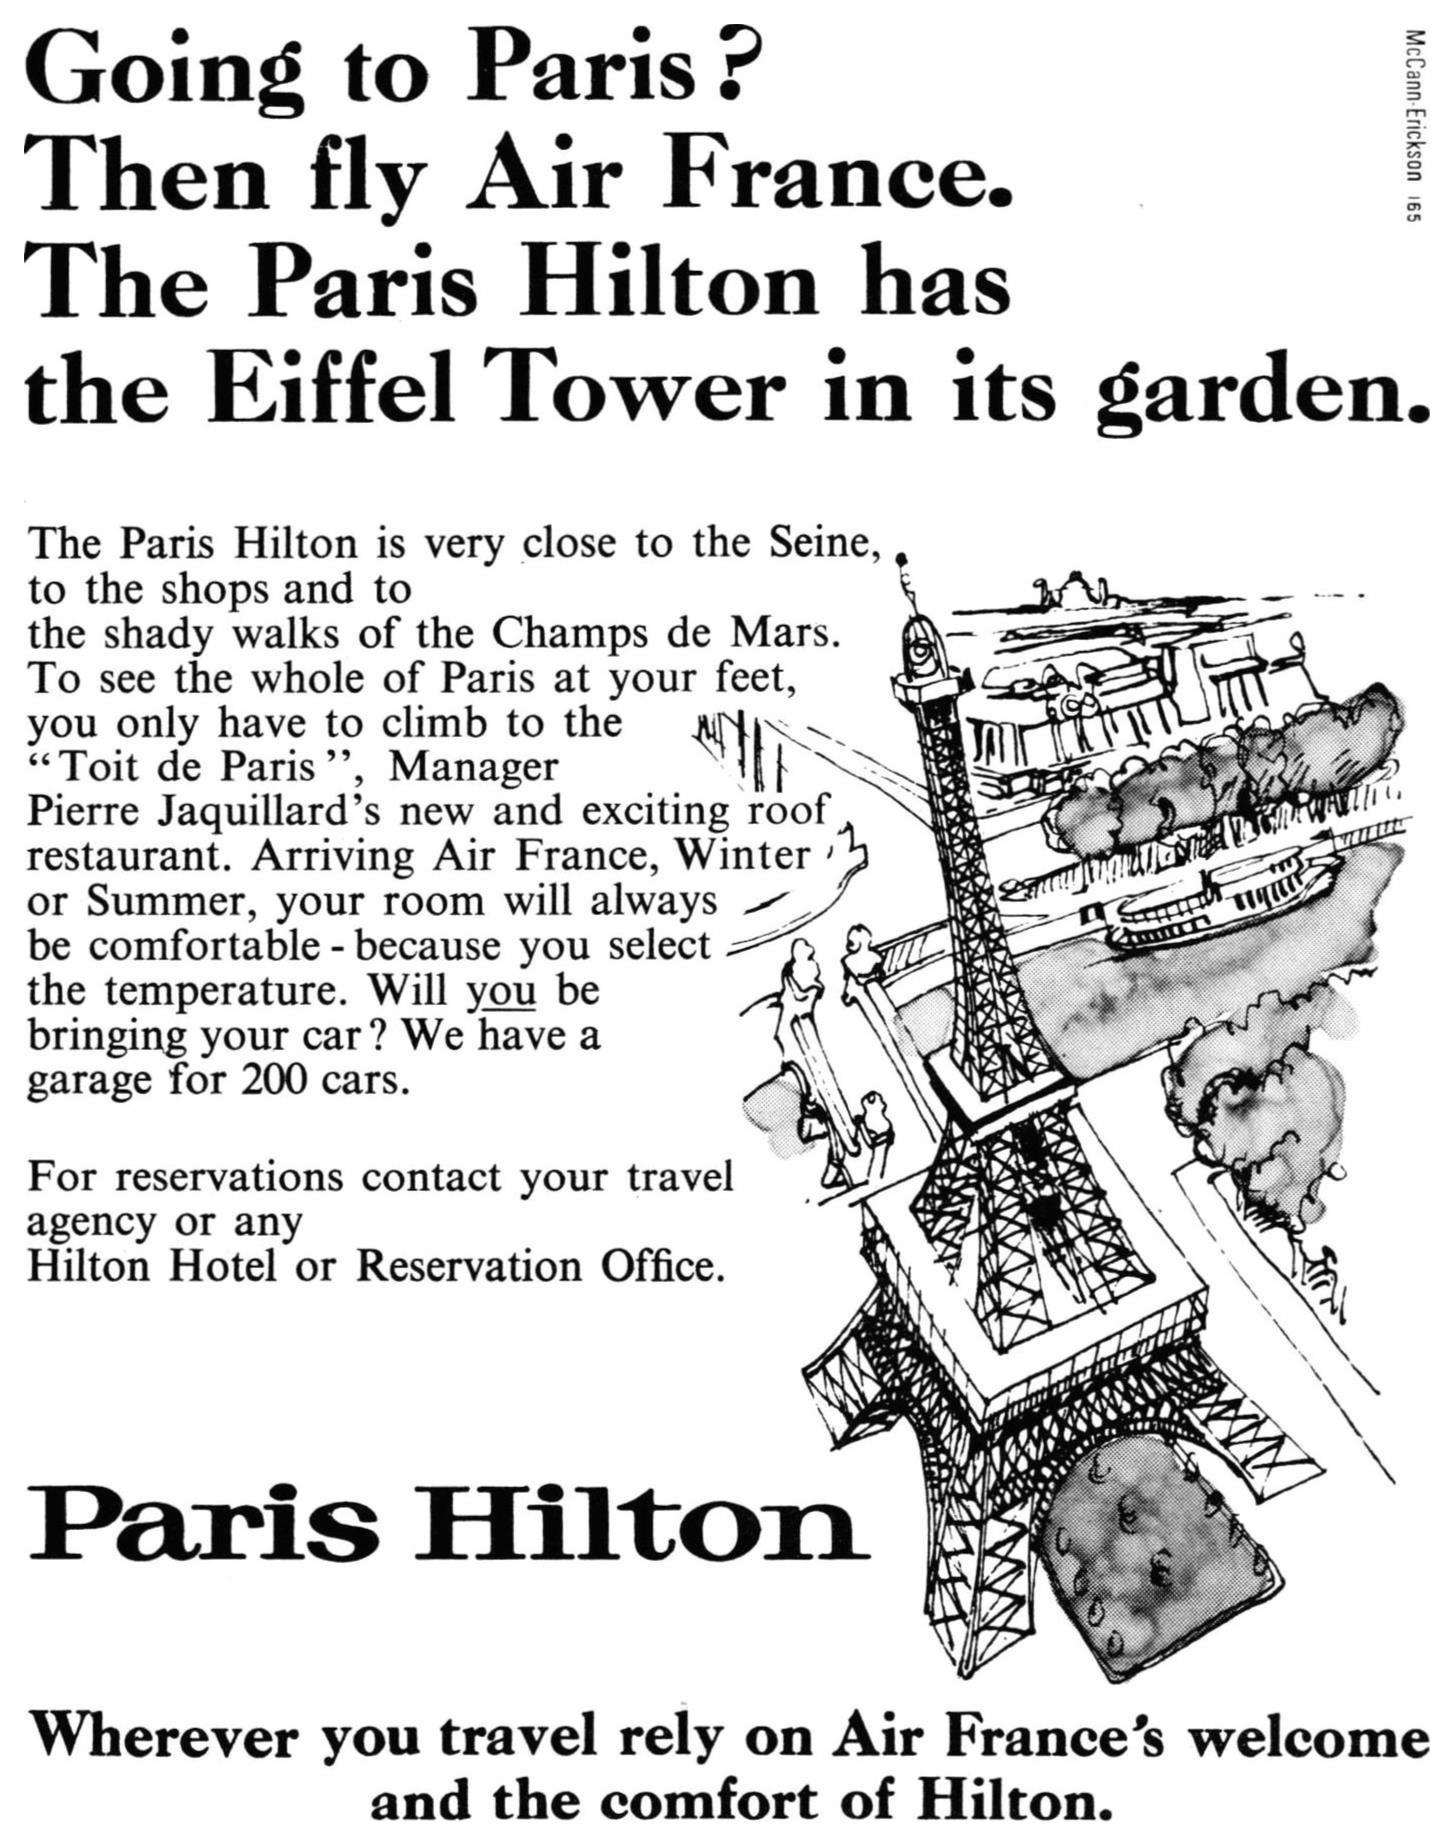 Paris Hilton 1966 0.jpg